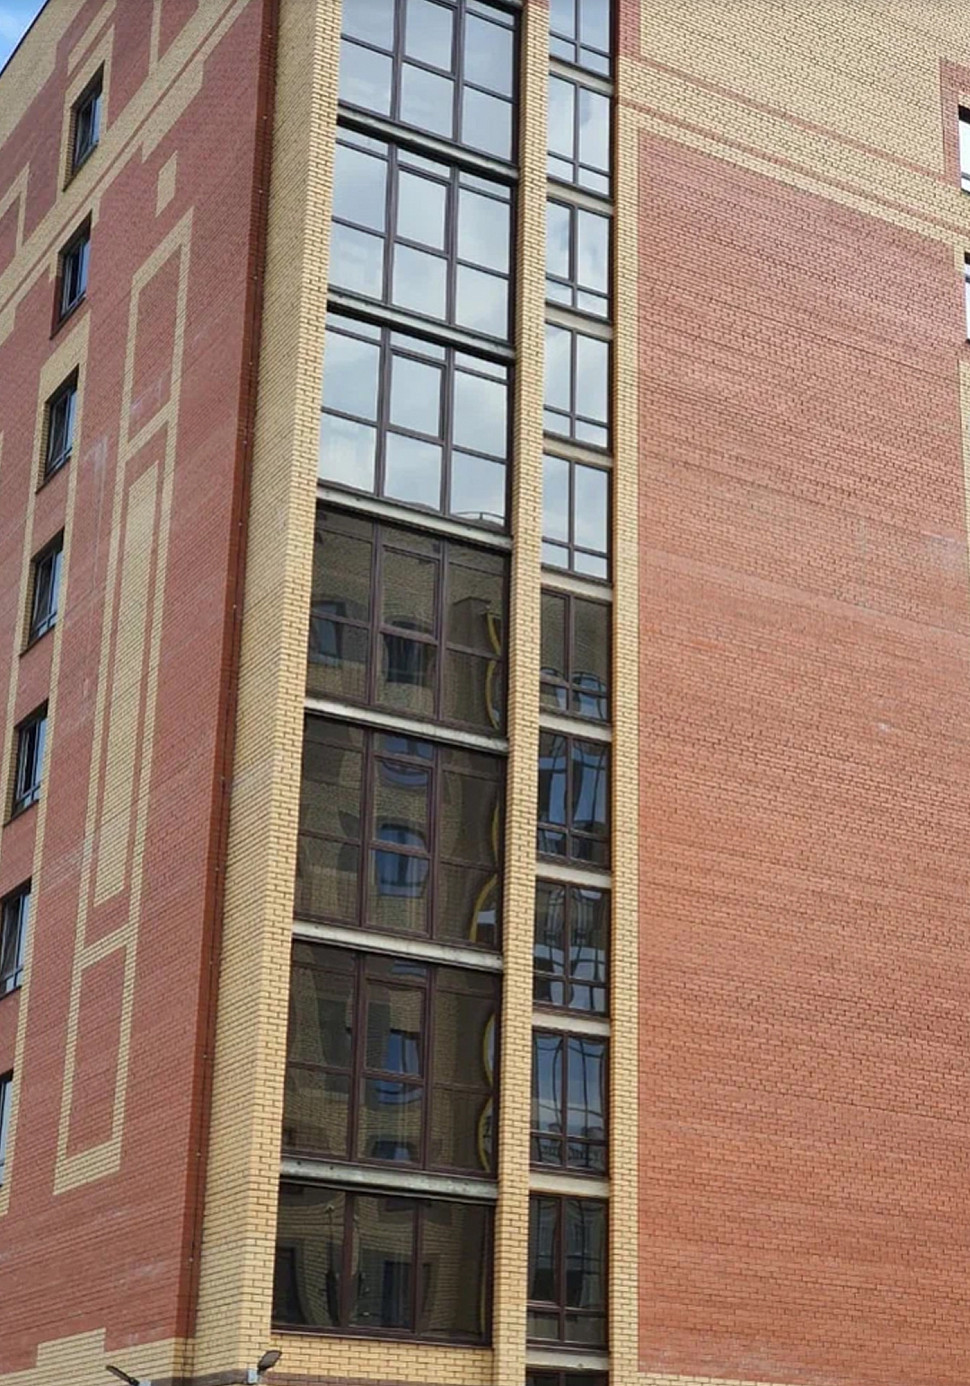 Примеры фасадов из лицевого кирпича 1 НФ красный гладкий производства Вышневолодской Керамики